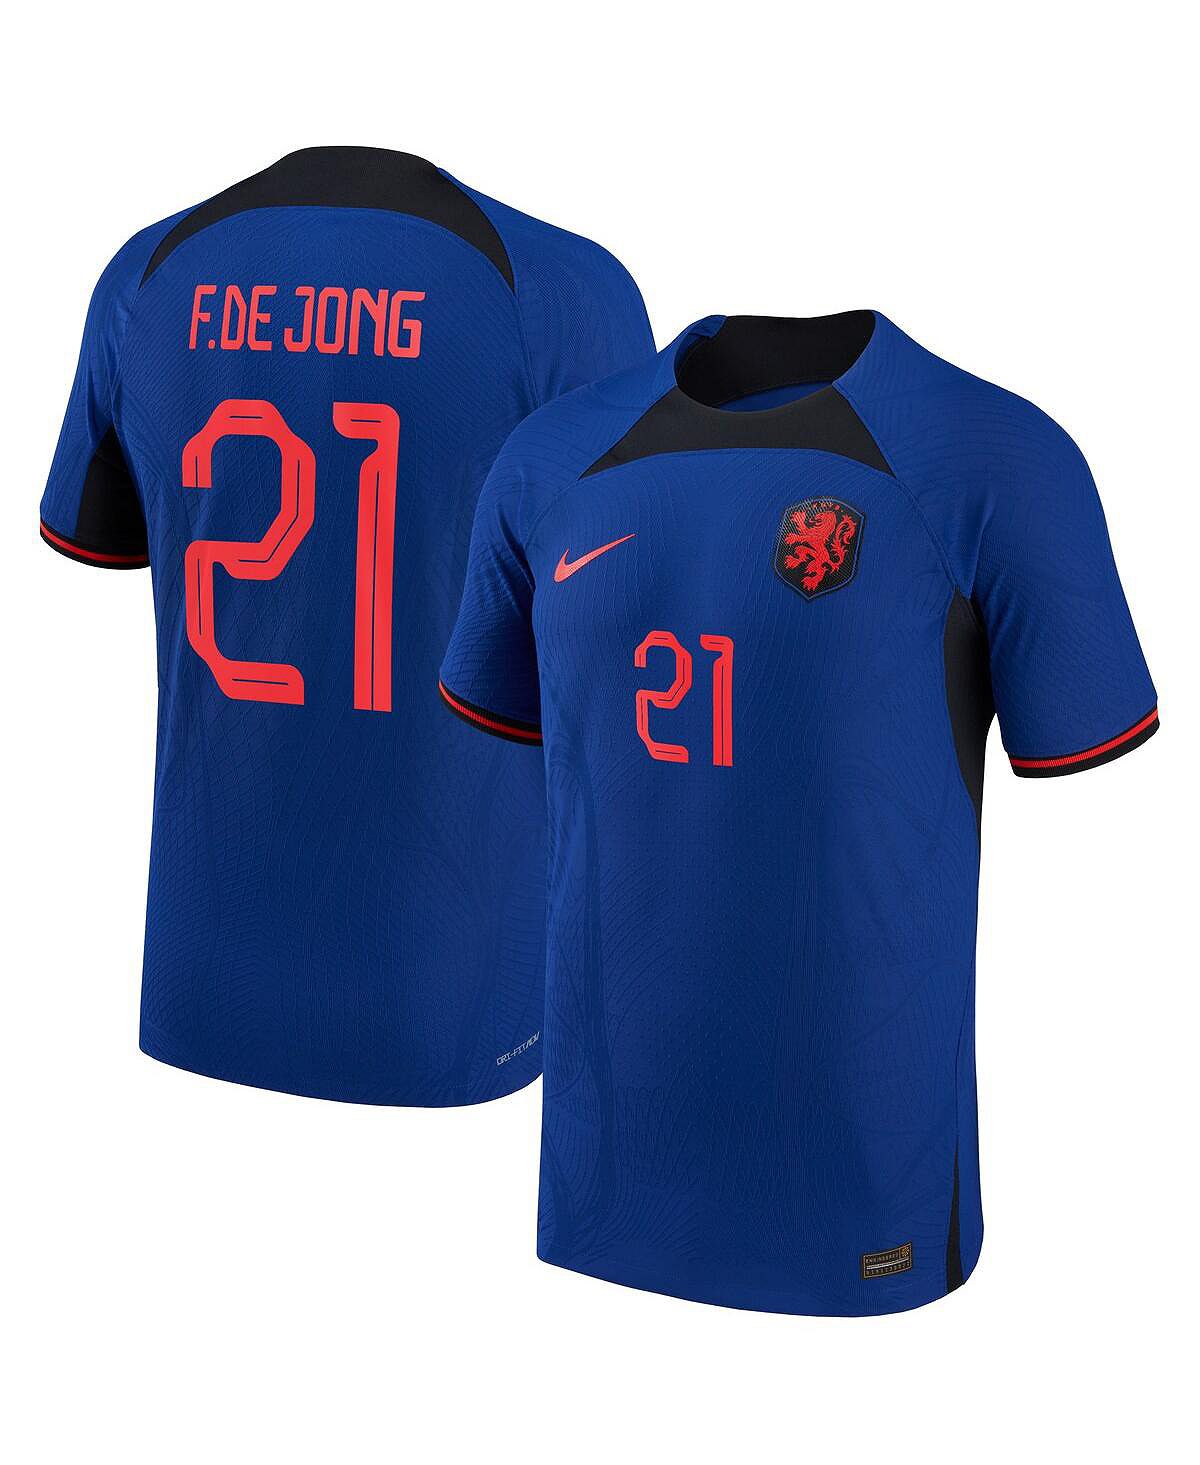 Мужская футболка frenkie de jong blue, национальная сборная нидерландов 2022/23, выездная форма vapor match, аутентичная футболка игрока Nike, синий пауэрбанк камень заряд бодрости на 2022 год